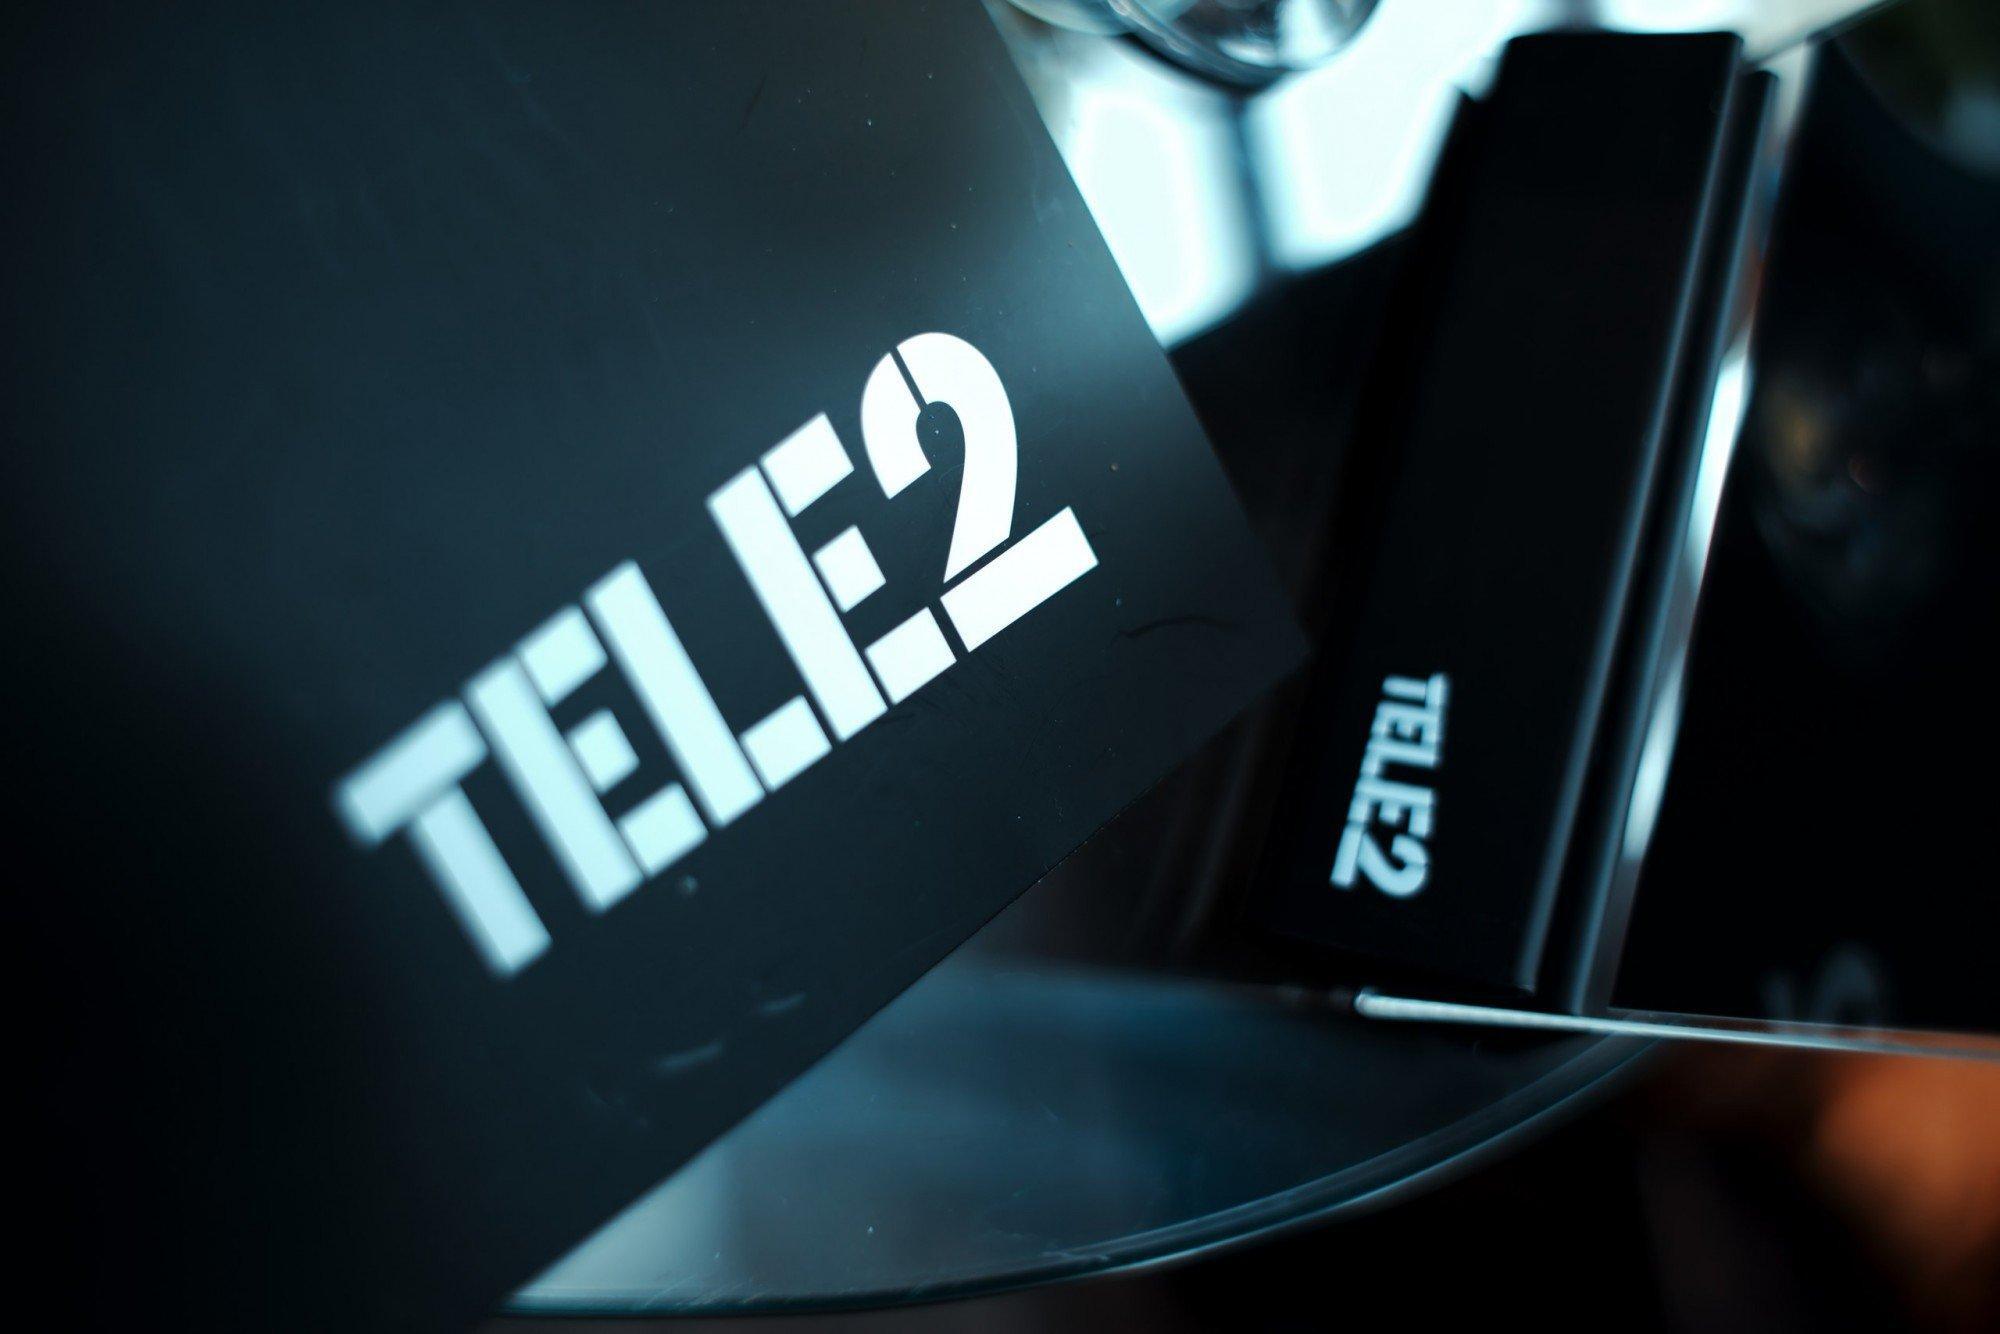  tele2      2020 